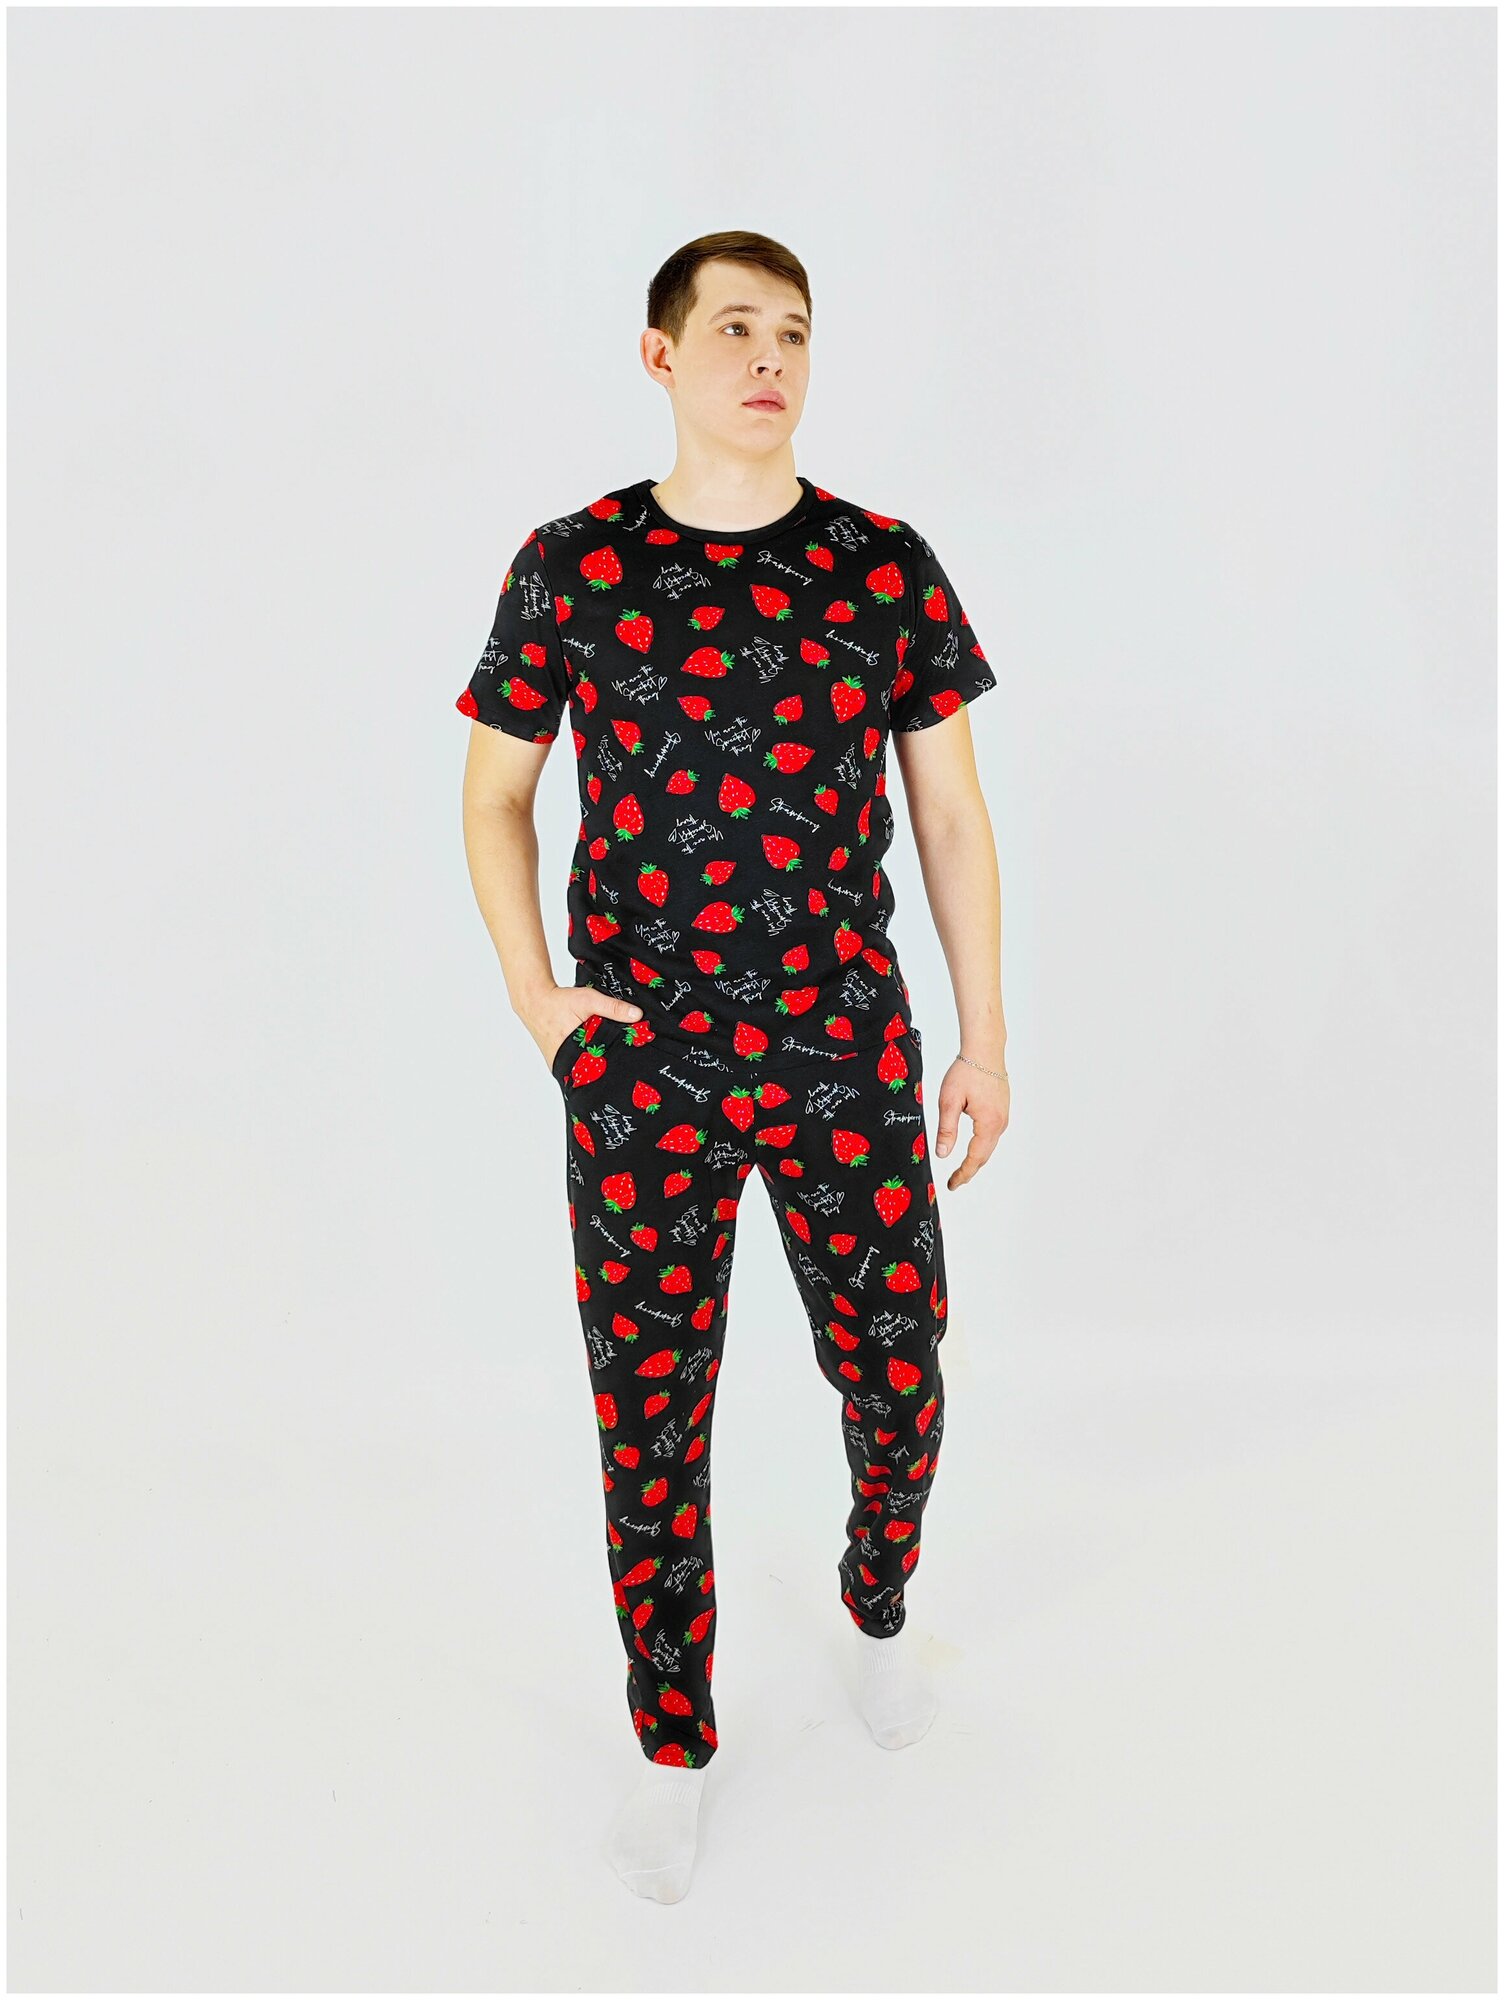 Мужская пижама, мужской пижамный комплект ARISTARHOV, Футболка + Брюки, Клубничка, черный алый, размер 44 - фотография № 2